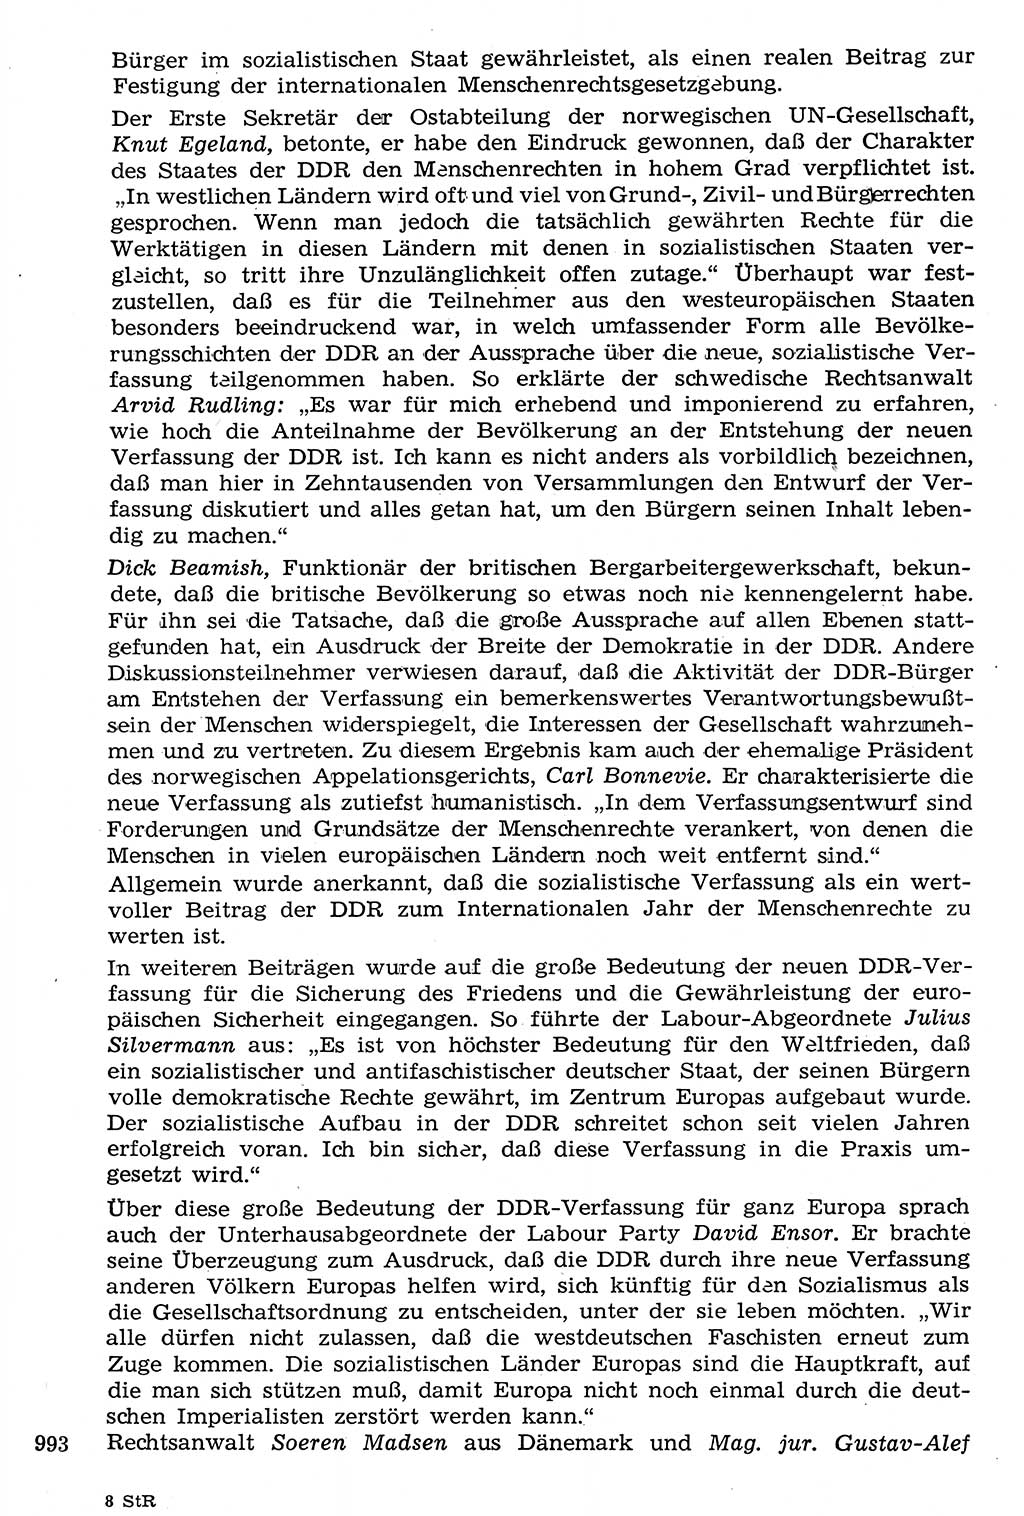 Staat und Recht (StuR), 17. Jahrgang [Deutsche Demokratische Republik (DDR)] 1968, Seite 993 (StuR DDR 1968, S. 993)